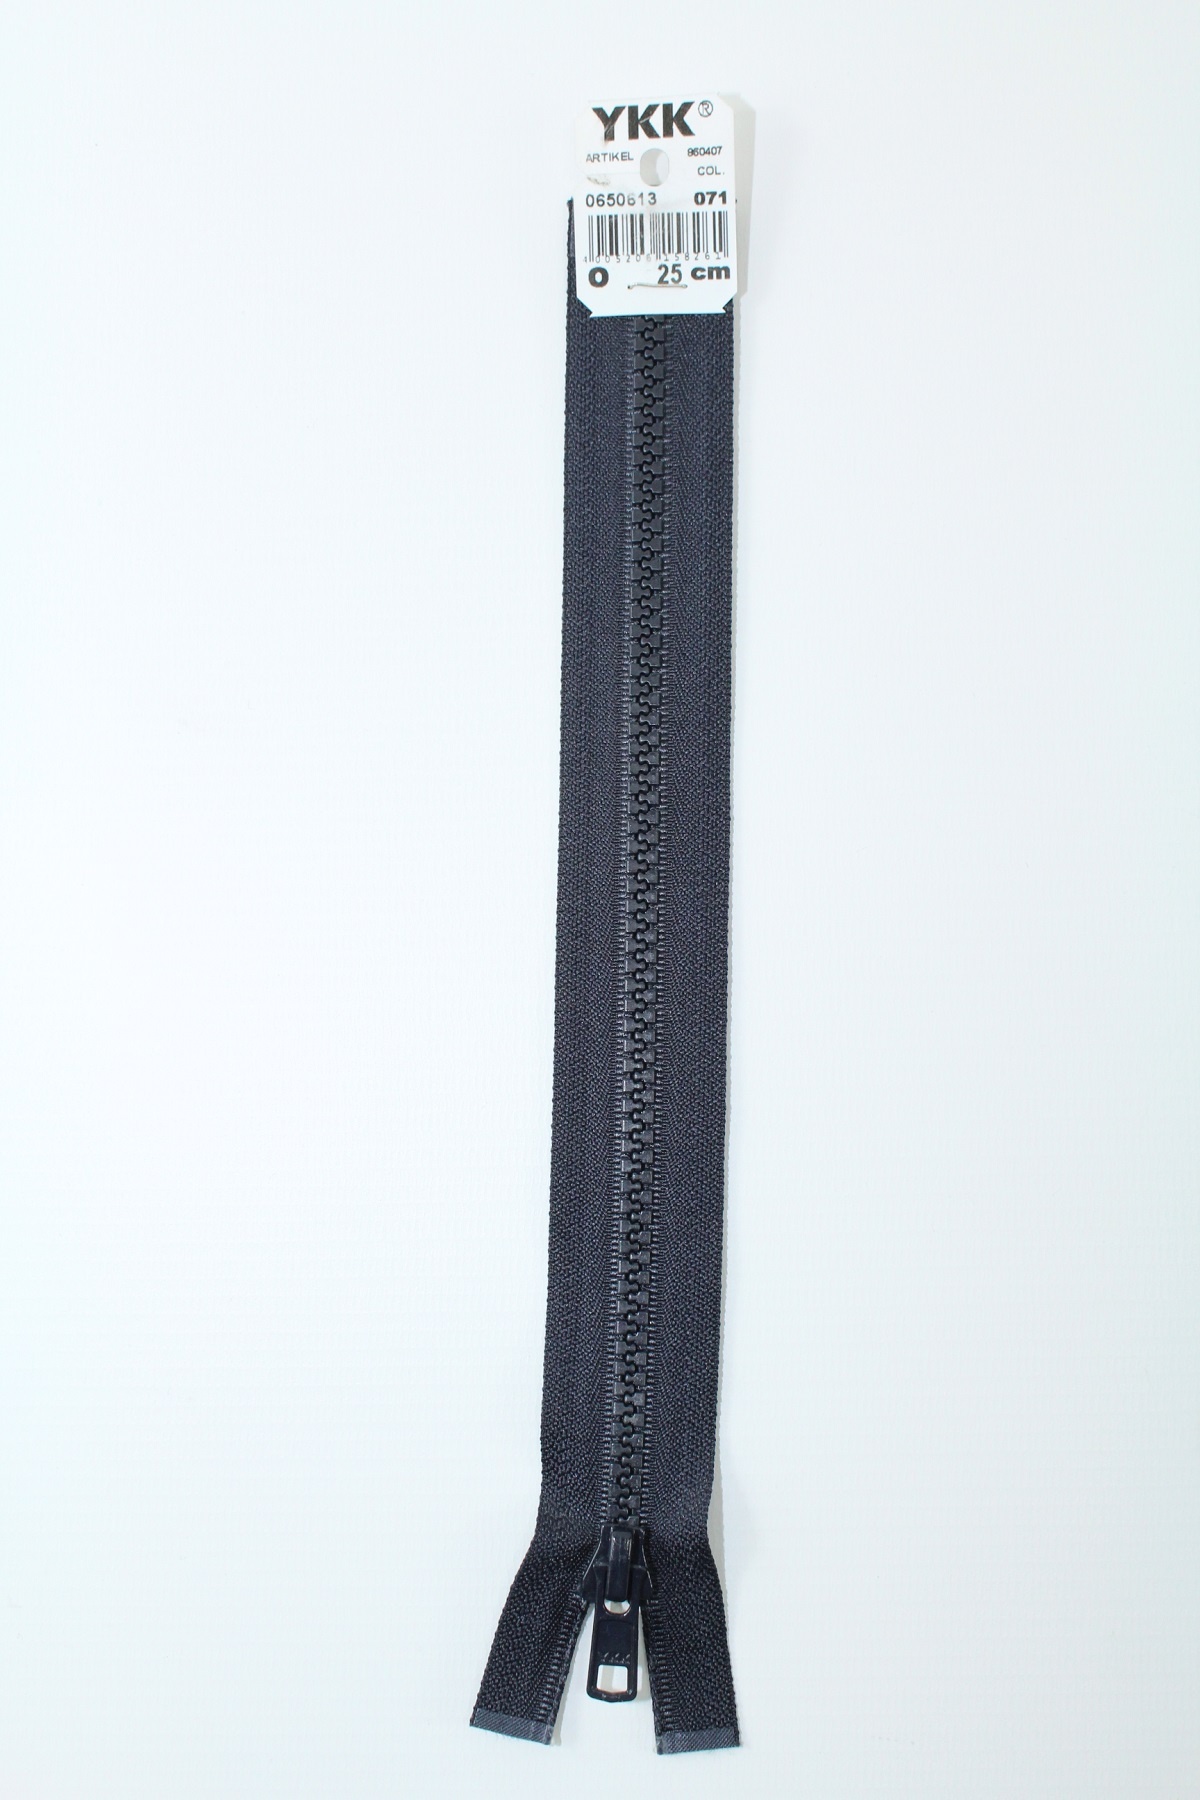 YKK - Reissverschlüsse 25 cm - 80 cm, teilbar, nachtblau